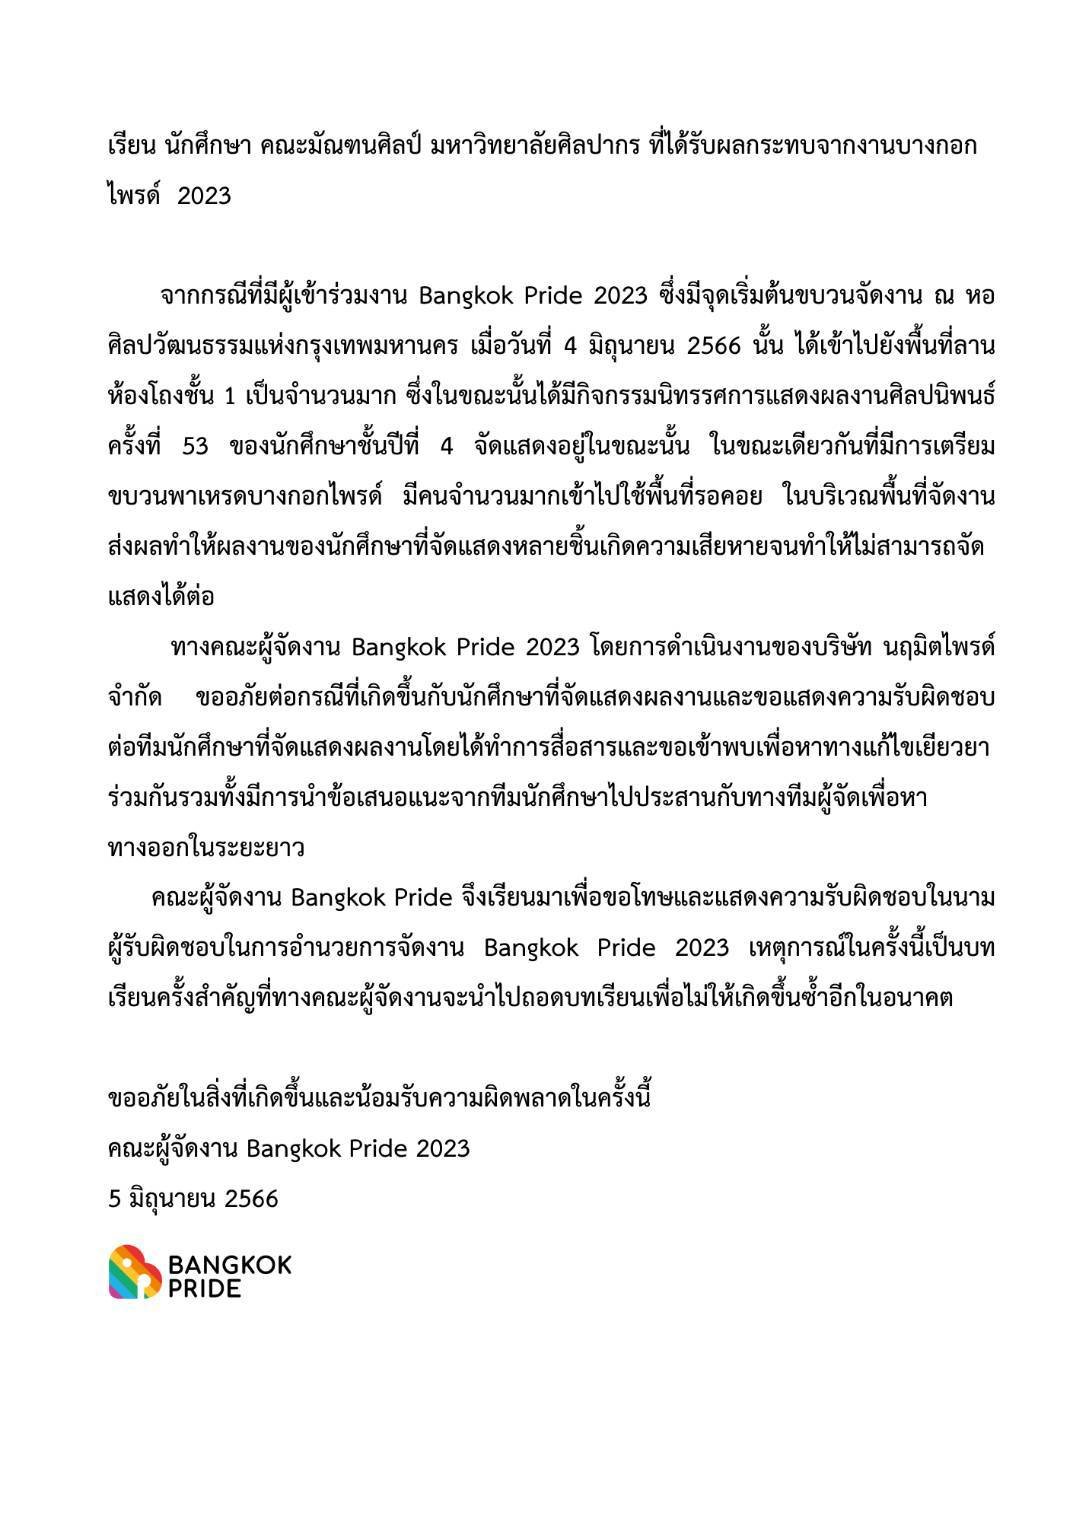 คณะผู้จัดงาน Bangkok Pride month 2023 ออกเอกสารชี้แจง